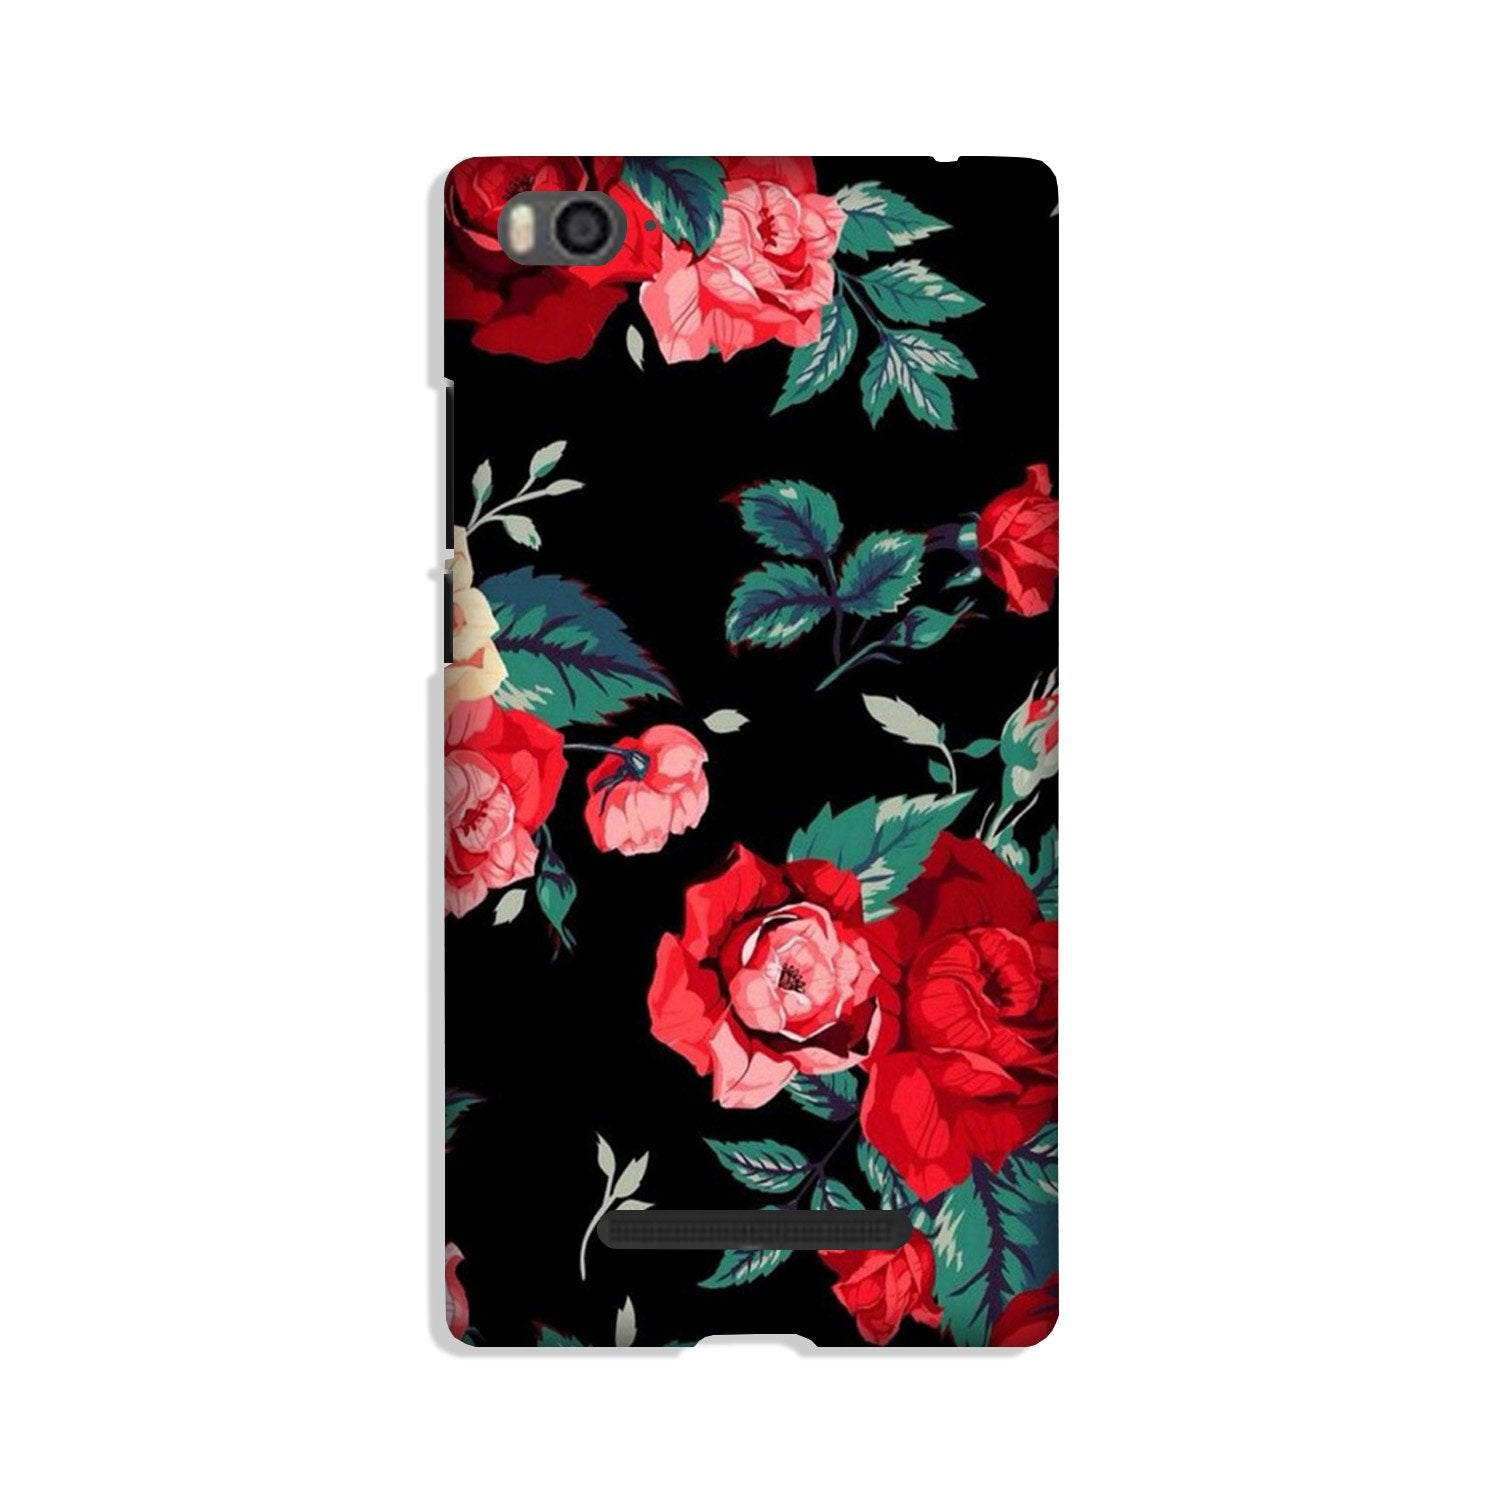 Red Rose2 Case for Xiaomi Mi 4i